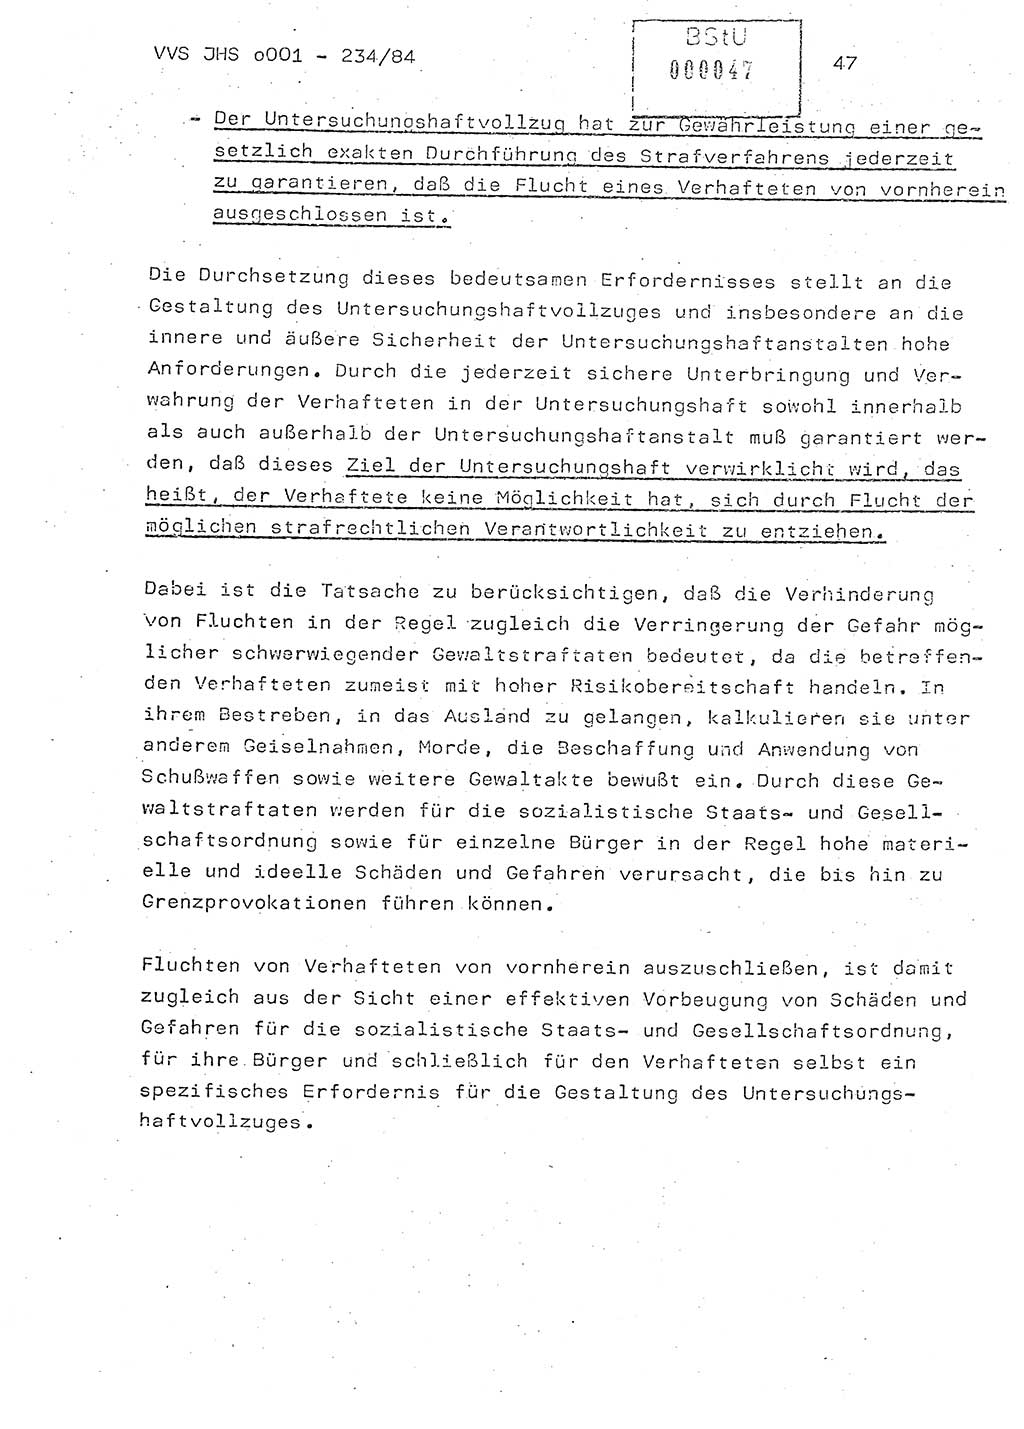 Dissertation Oberst Siegfried Rataizick (Abt. ⅩⅣ), Oberstleutnant Volkmar Heinz (Abt. ⅩⅣ), Oberstleutnant Werner Stein (HA Ⅸ), Hauptmann Heinz Conrad (JHS), Ministerium für Staatssicherheit (MfS) [Deutsche Demokratische Republik (DDR)], Juristische Hochschule (JHS), Vertrauliche Verschlußsache (VVS) o001-234/84, Potsdam 1984, Seite 47 (Diss. MfS DDR JHS VVS o001-234/84 1984, S. 47)